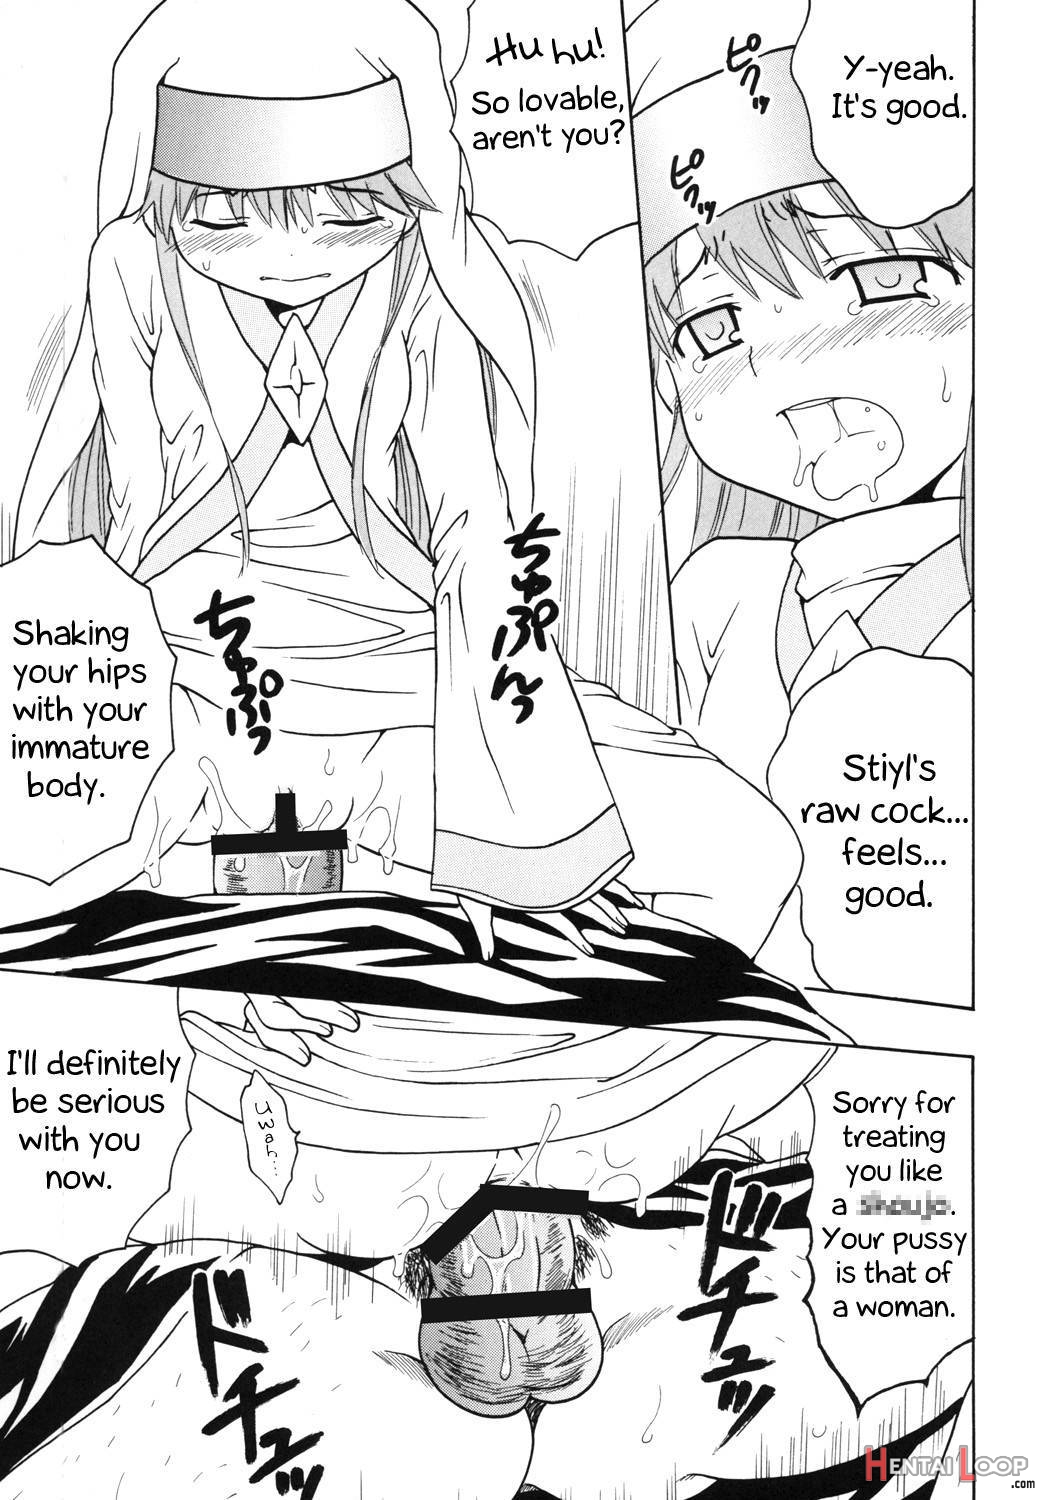 Toaru Otaku no Index #1 page 40